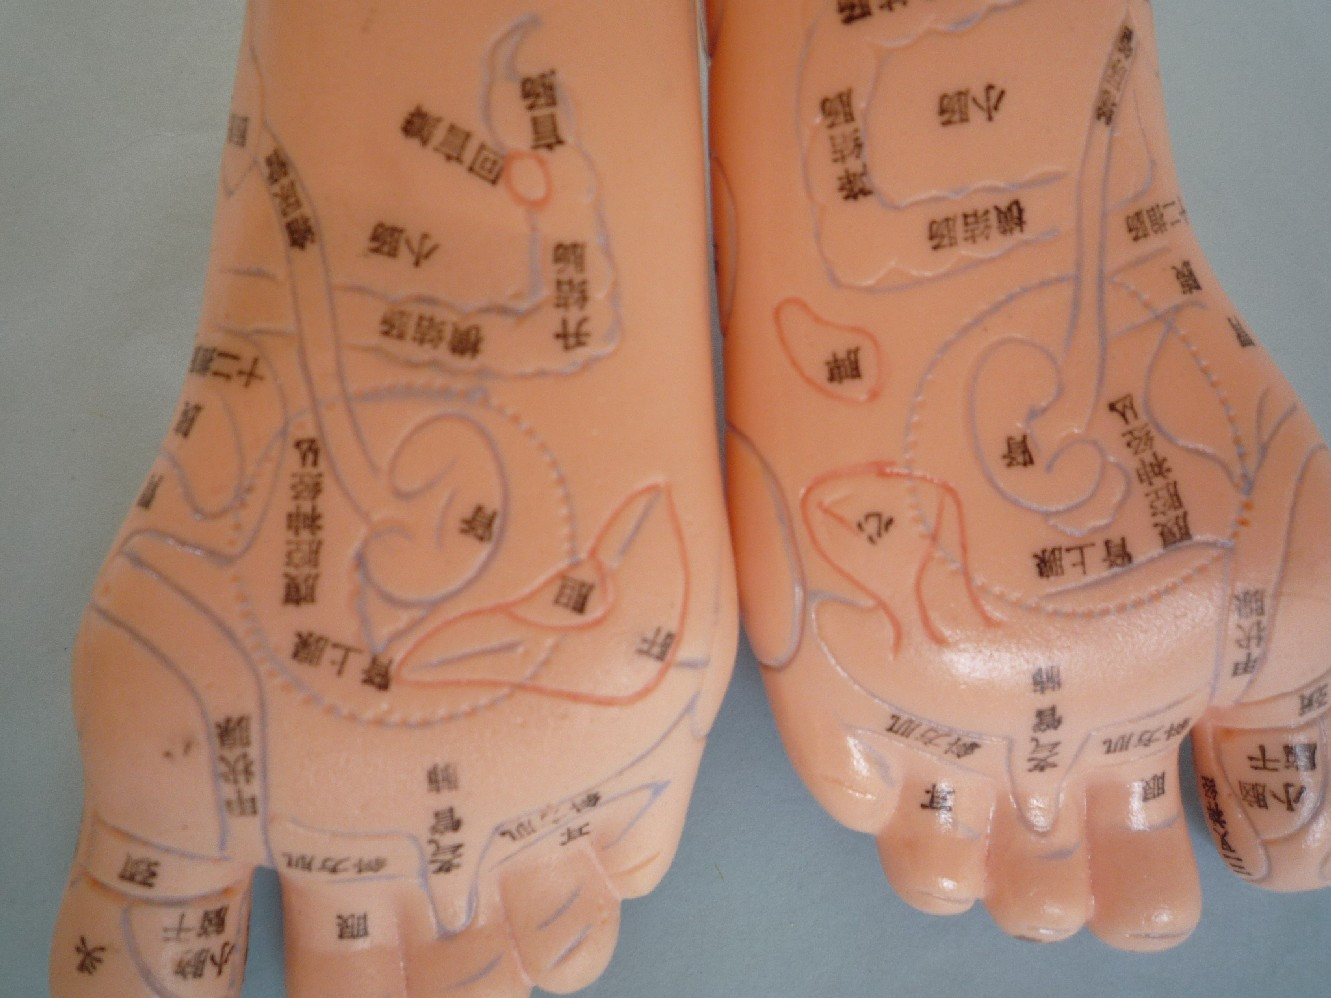 这是新近开发的保健足模型,用pvc制成,显示相对应的人体内脏器官在脚